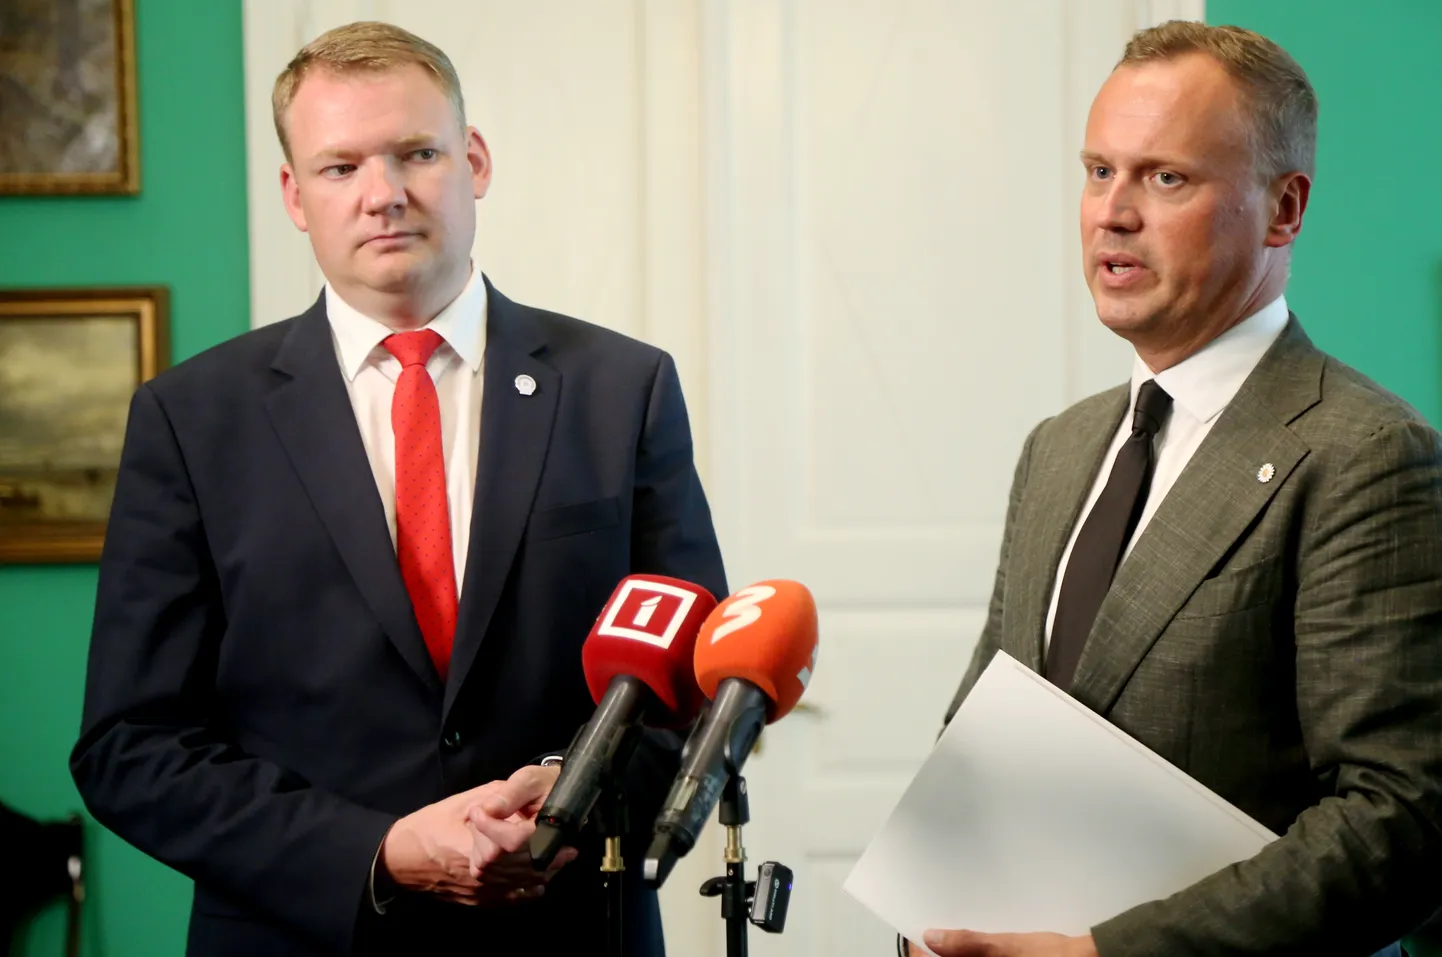 Partiju apvienības "Apvienotais saraksts" līdzpriekšsēdētāji - Saeimas priekšsēdētājs Edvards Smiltēns (no kreisās) un Saeimas deputāts Edgars Tavars.